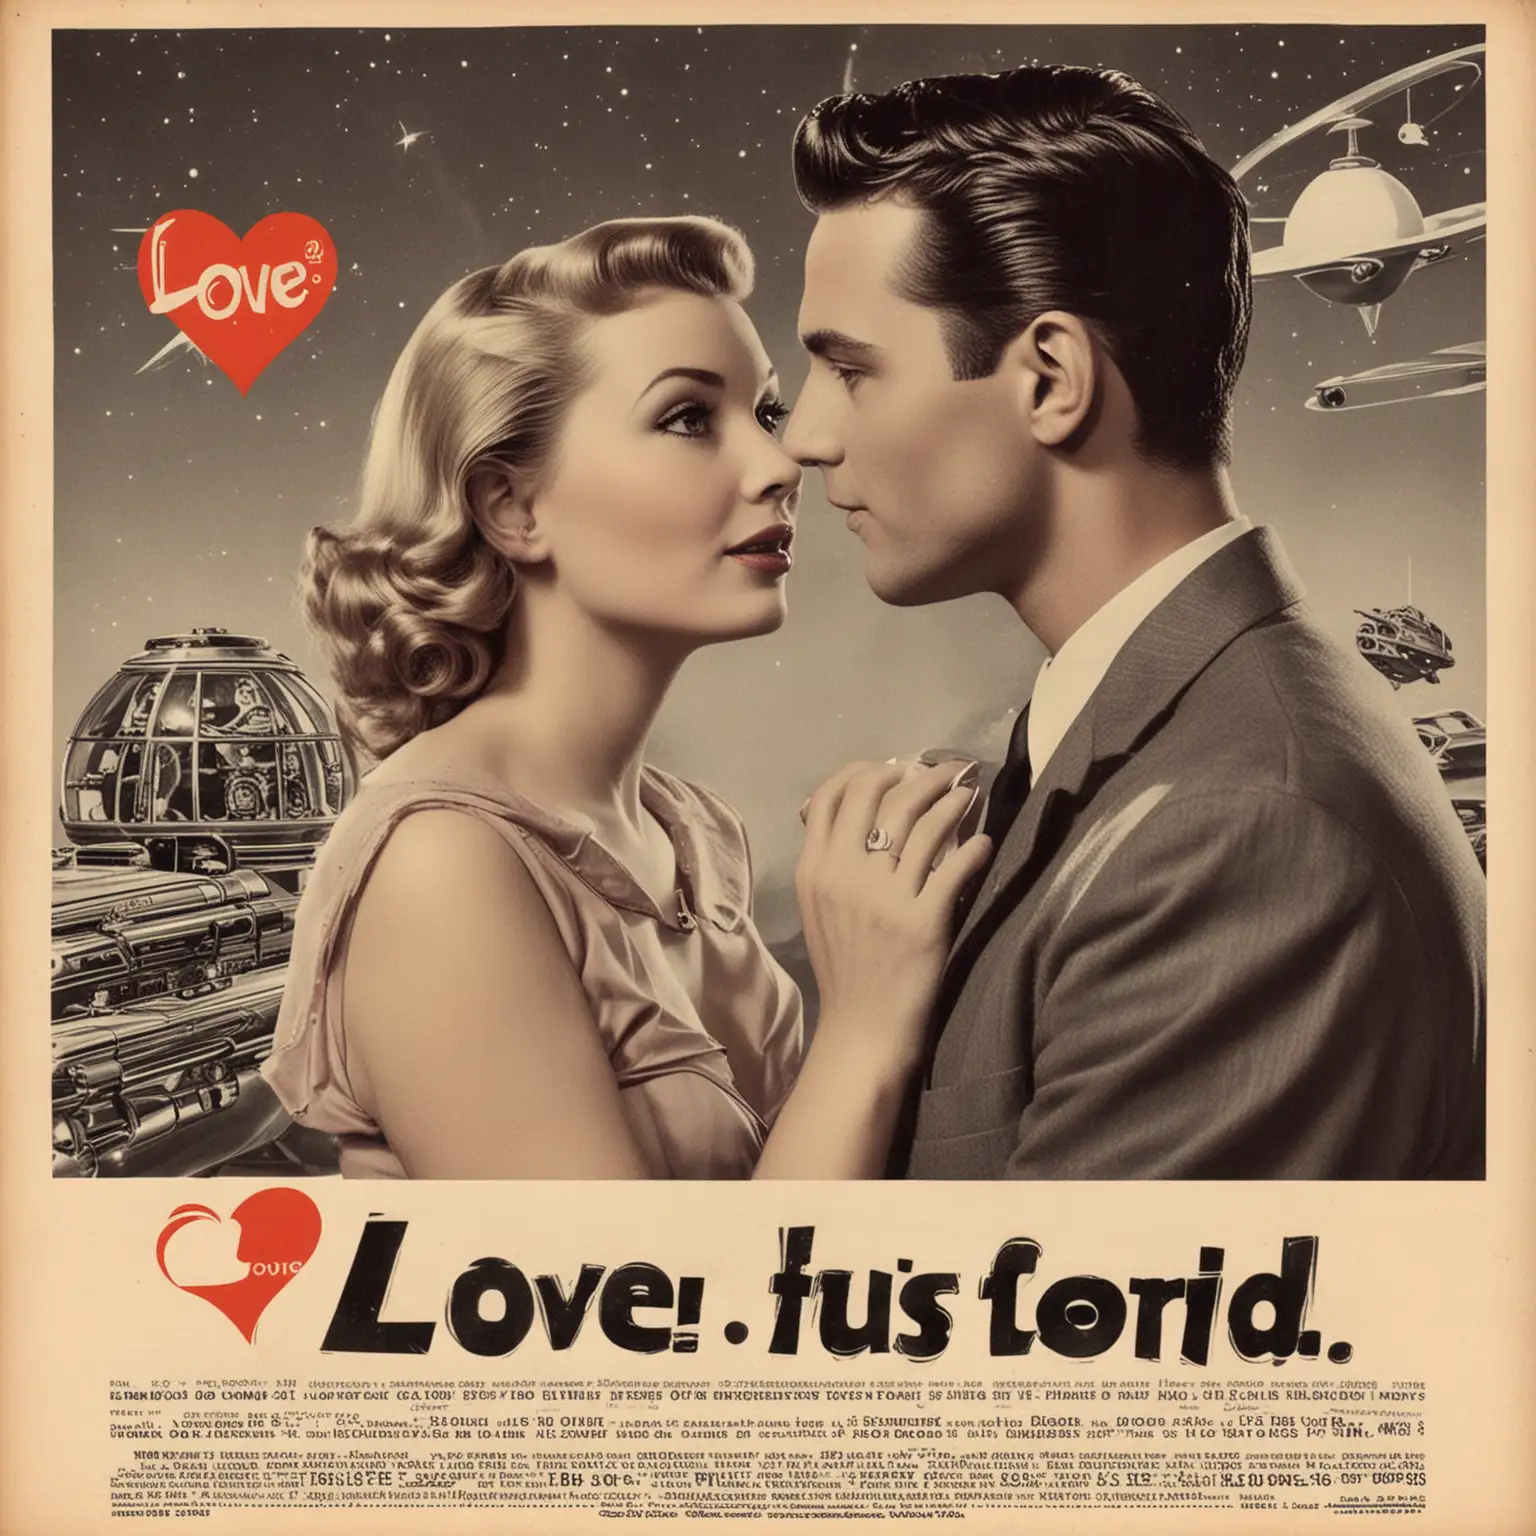 Retro SciFi Love Advertisement Romantic Couple Embracing in 1950s Futuristic Setting